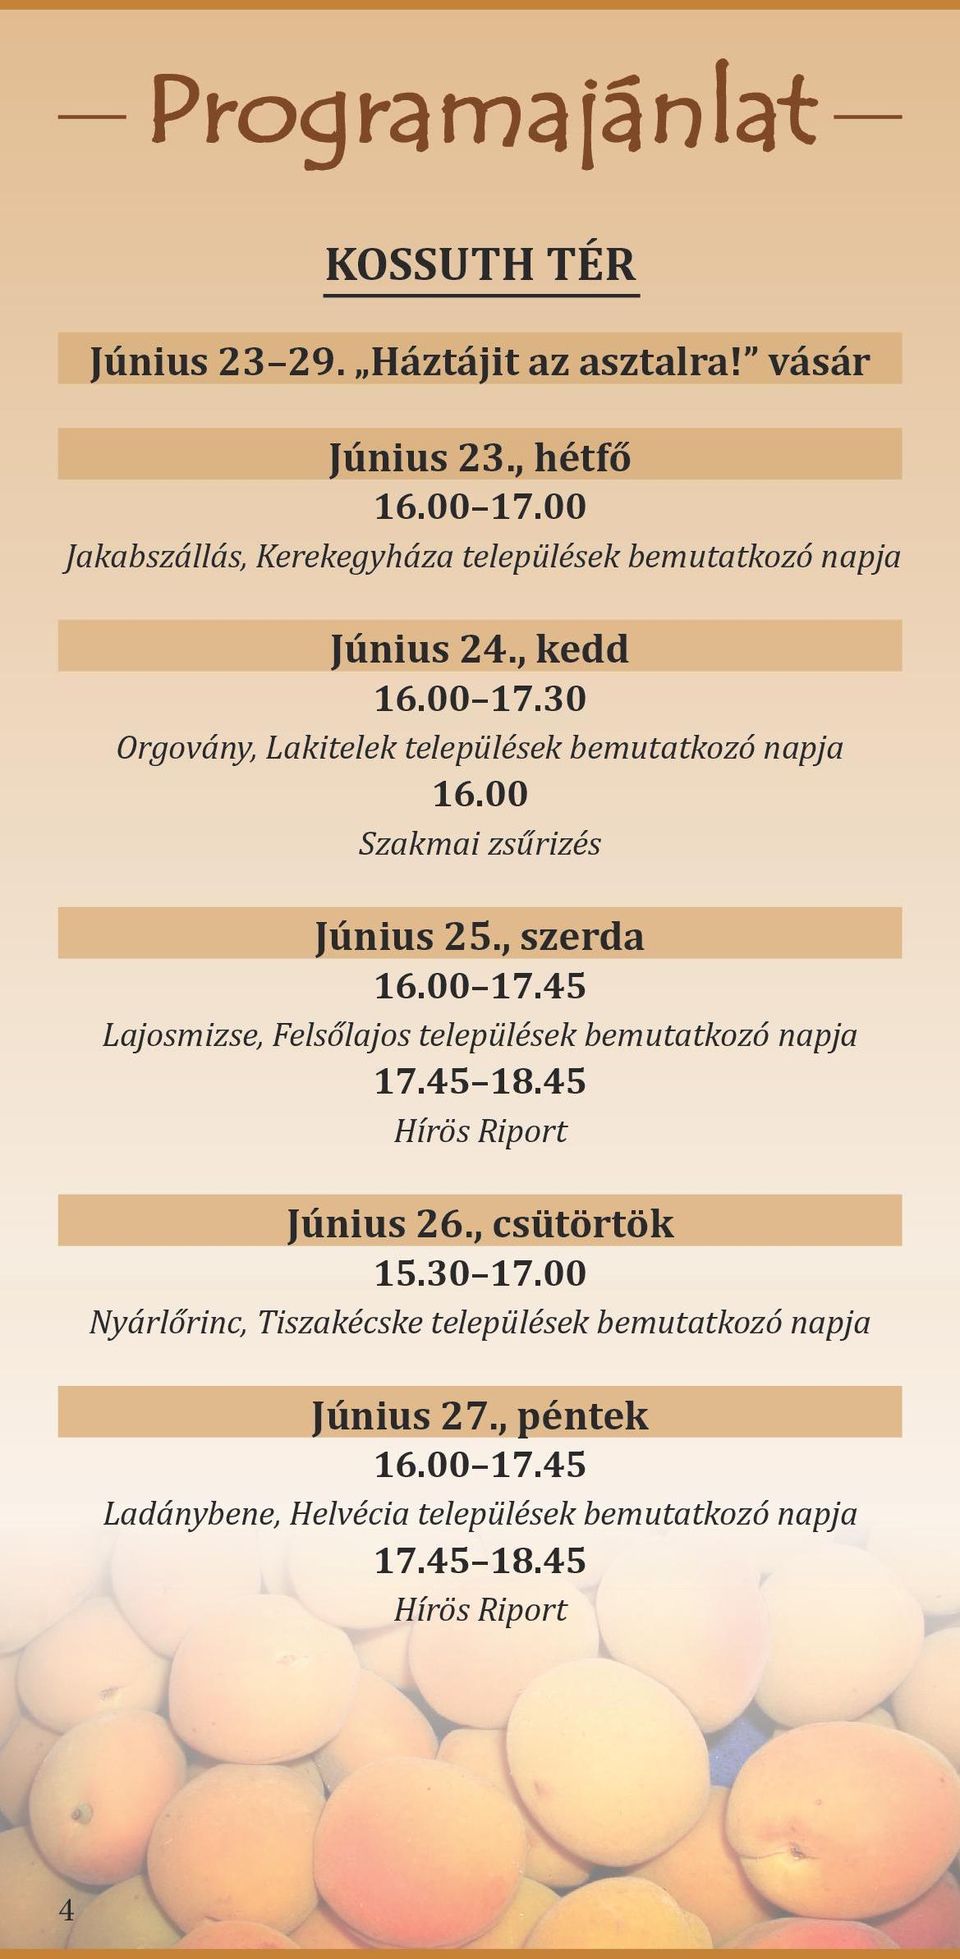 30 Orgovány, Lakitelek települések bemutatkozó napja 16.00 Szakmai zsűrizés Június 25., szerda 16.00 17.